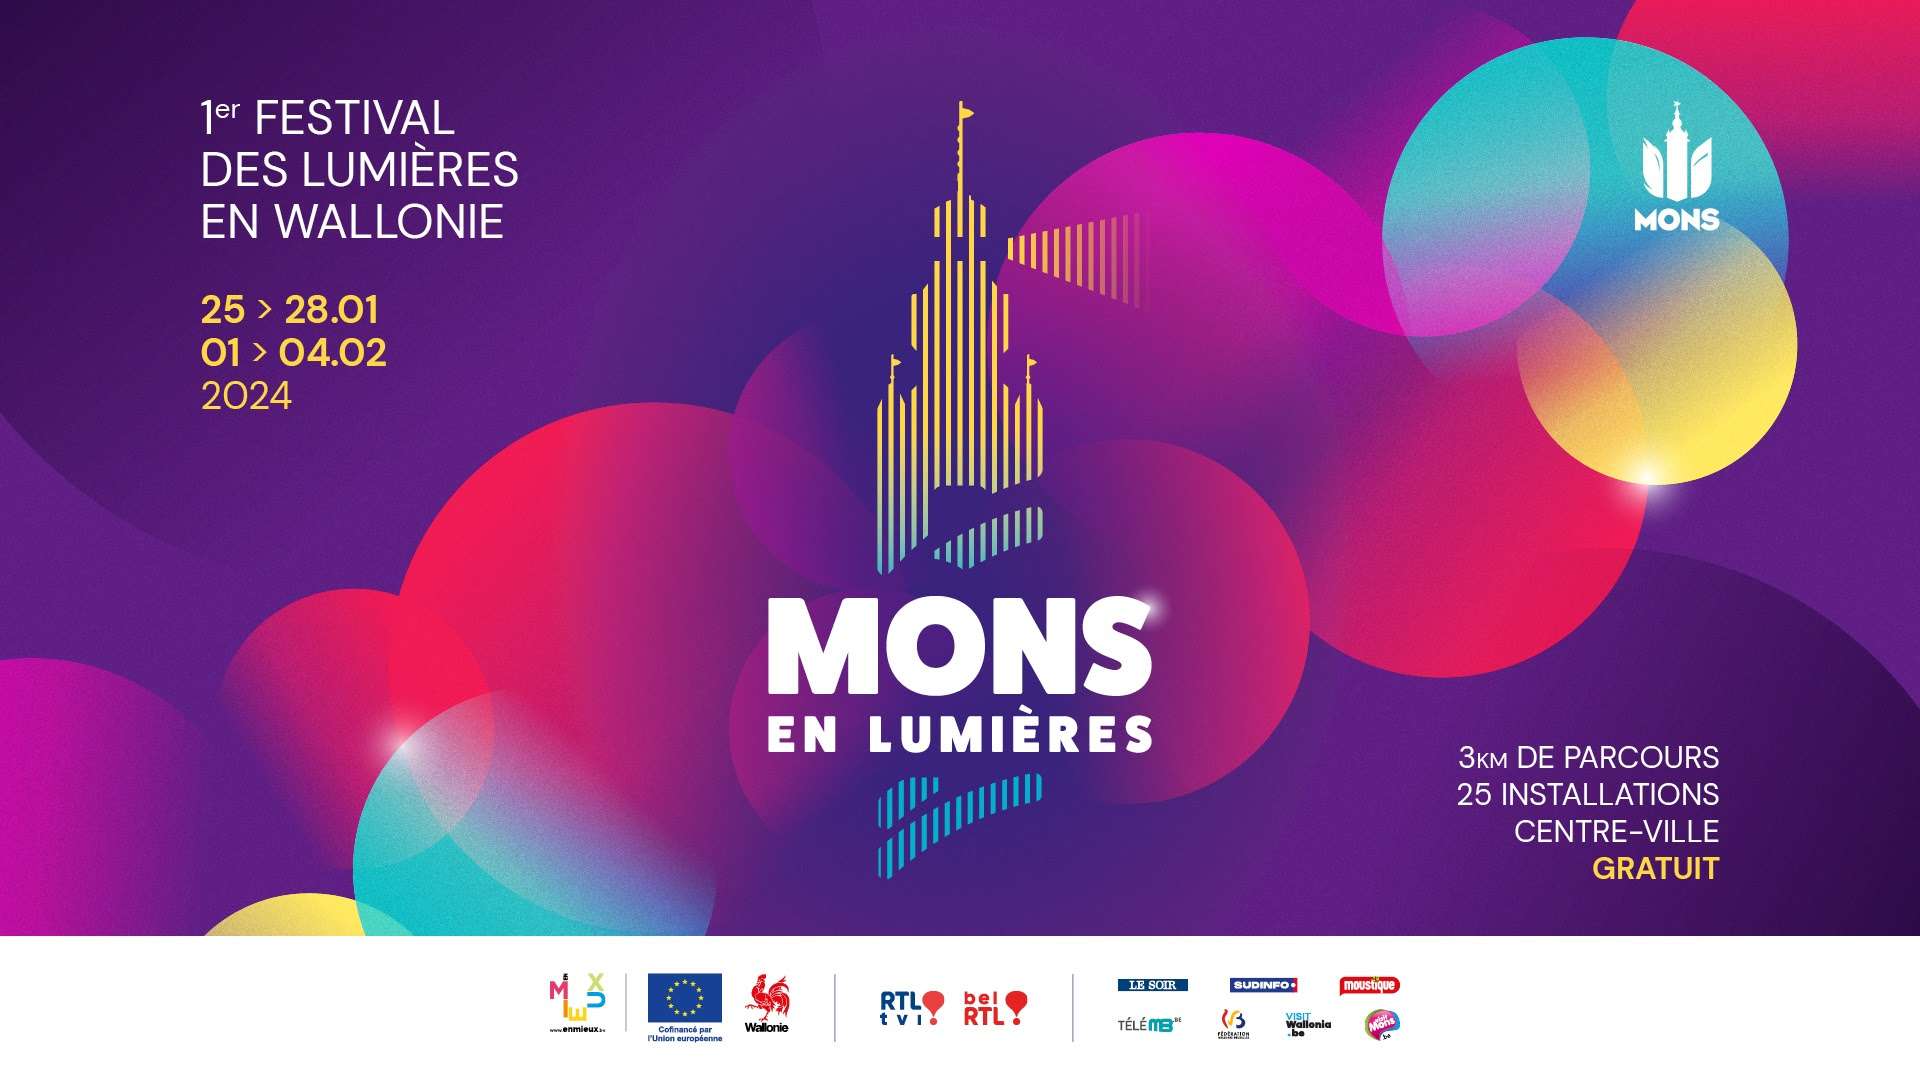 « Mons en lumière » est le 1er festival de lumières en Wallonie